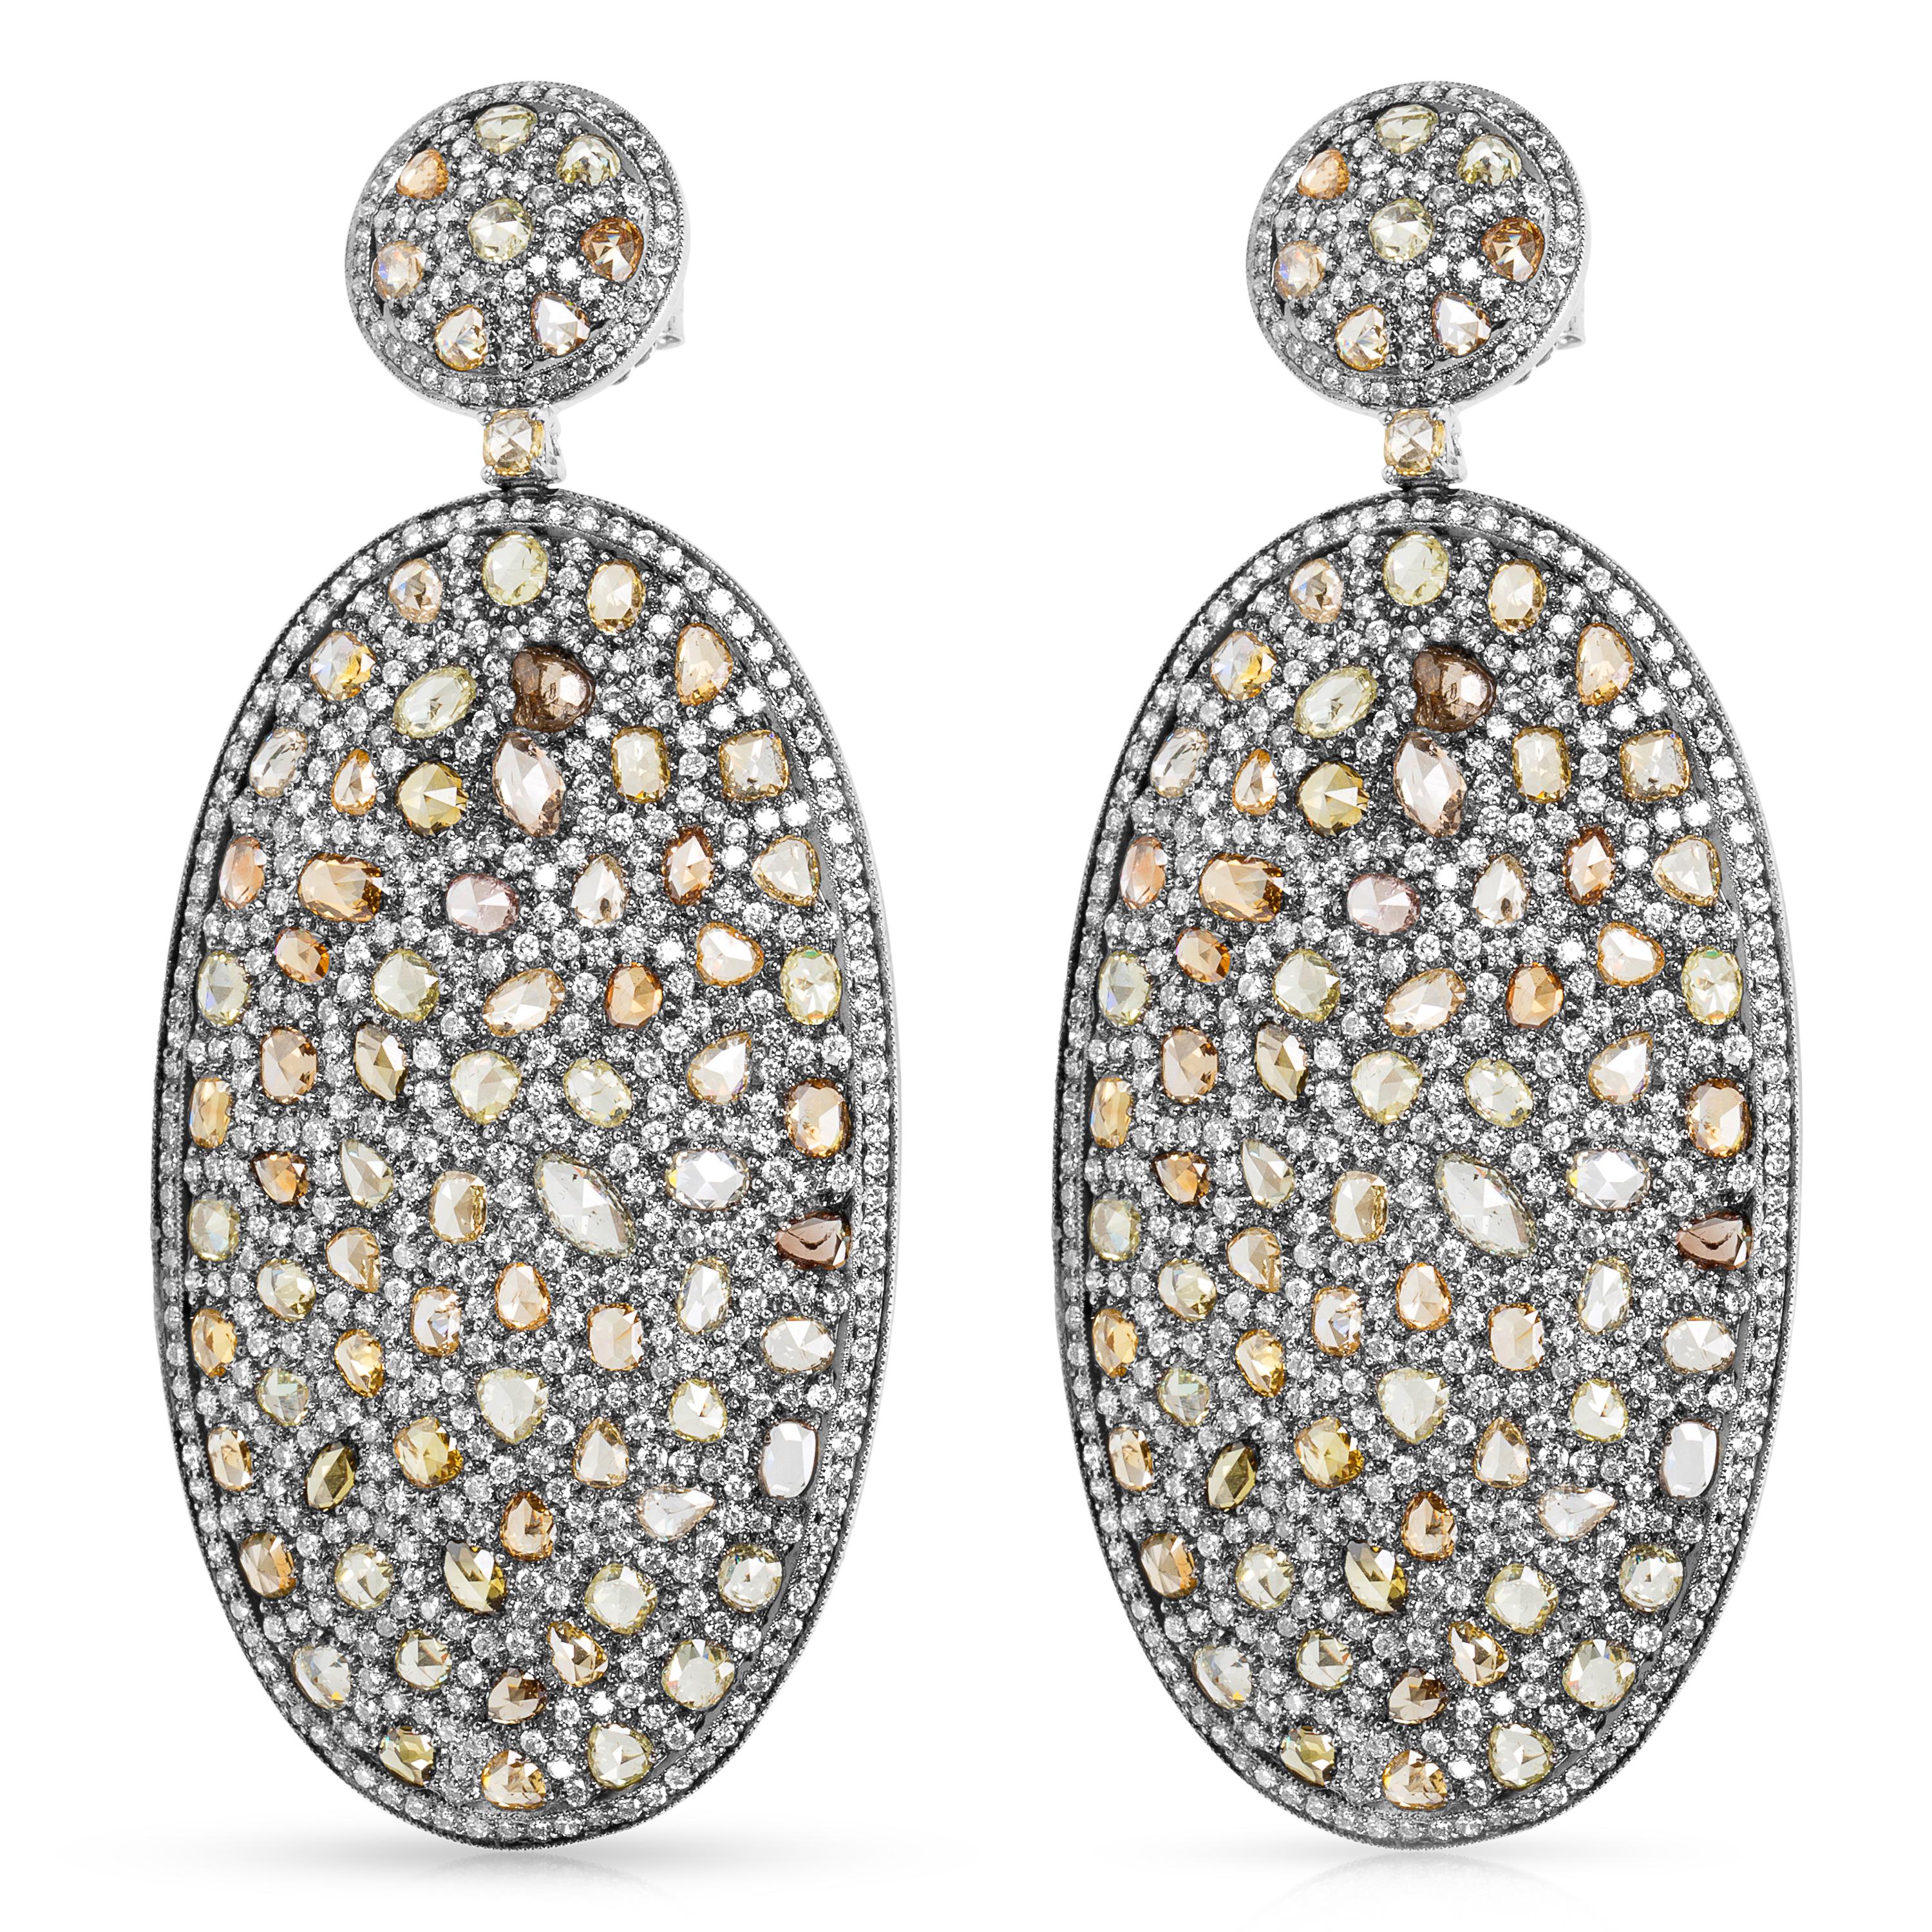 Modern Rose Cut Diamond Oval Drop Earrings in 16 Karat White Gold 21.13 Carat